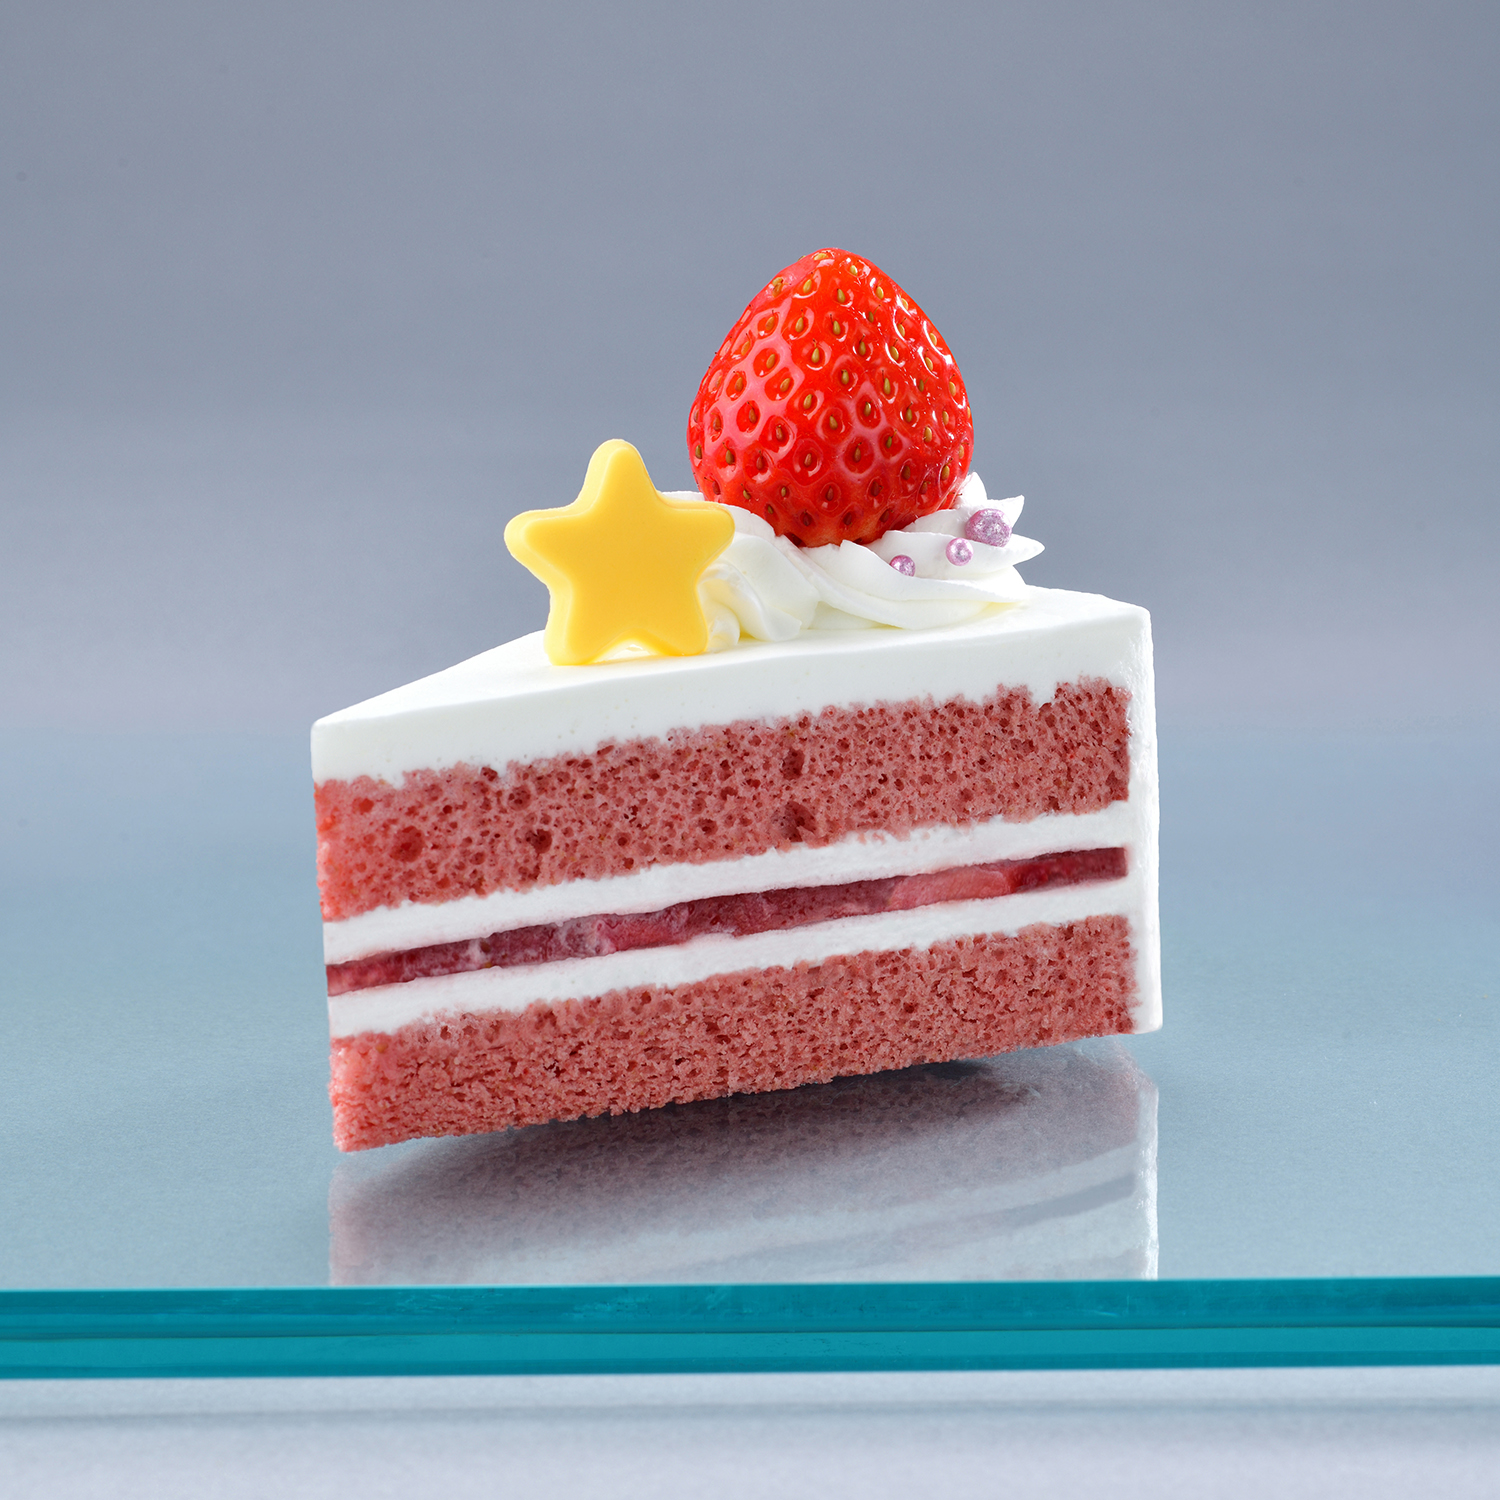 「カービィカフェ プチ」ピンク・ショートケーキ 〜カービィがいちごをのせました〜